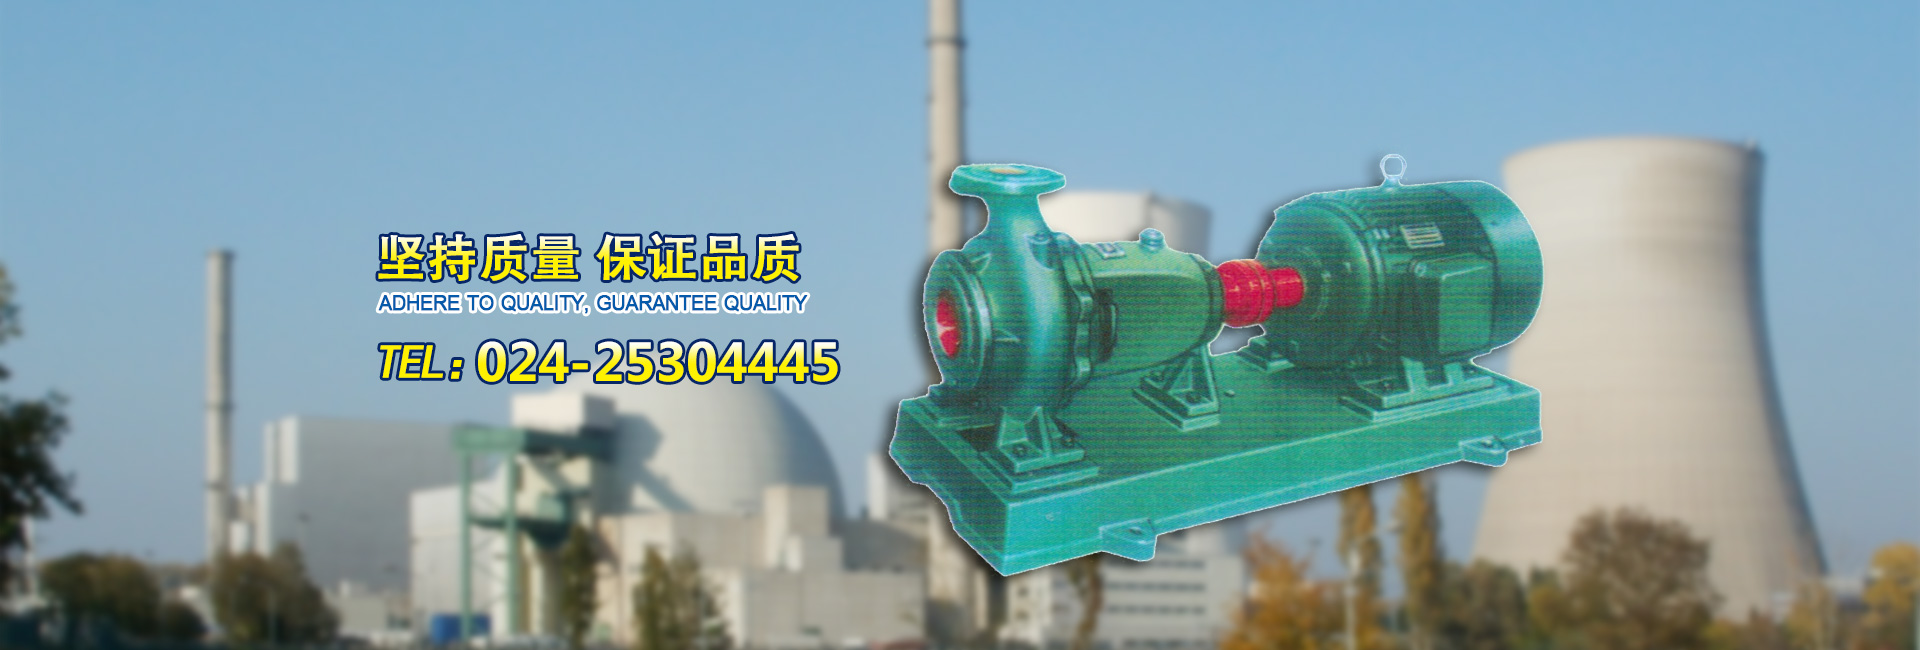 電(dian)站(zhan)泵